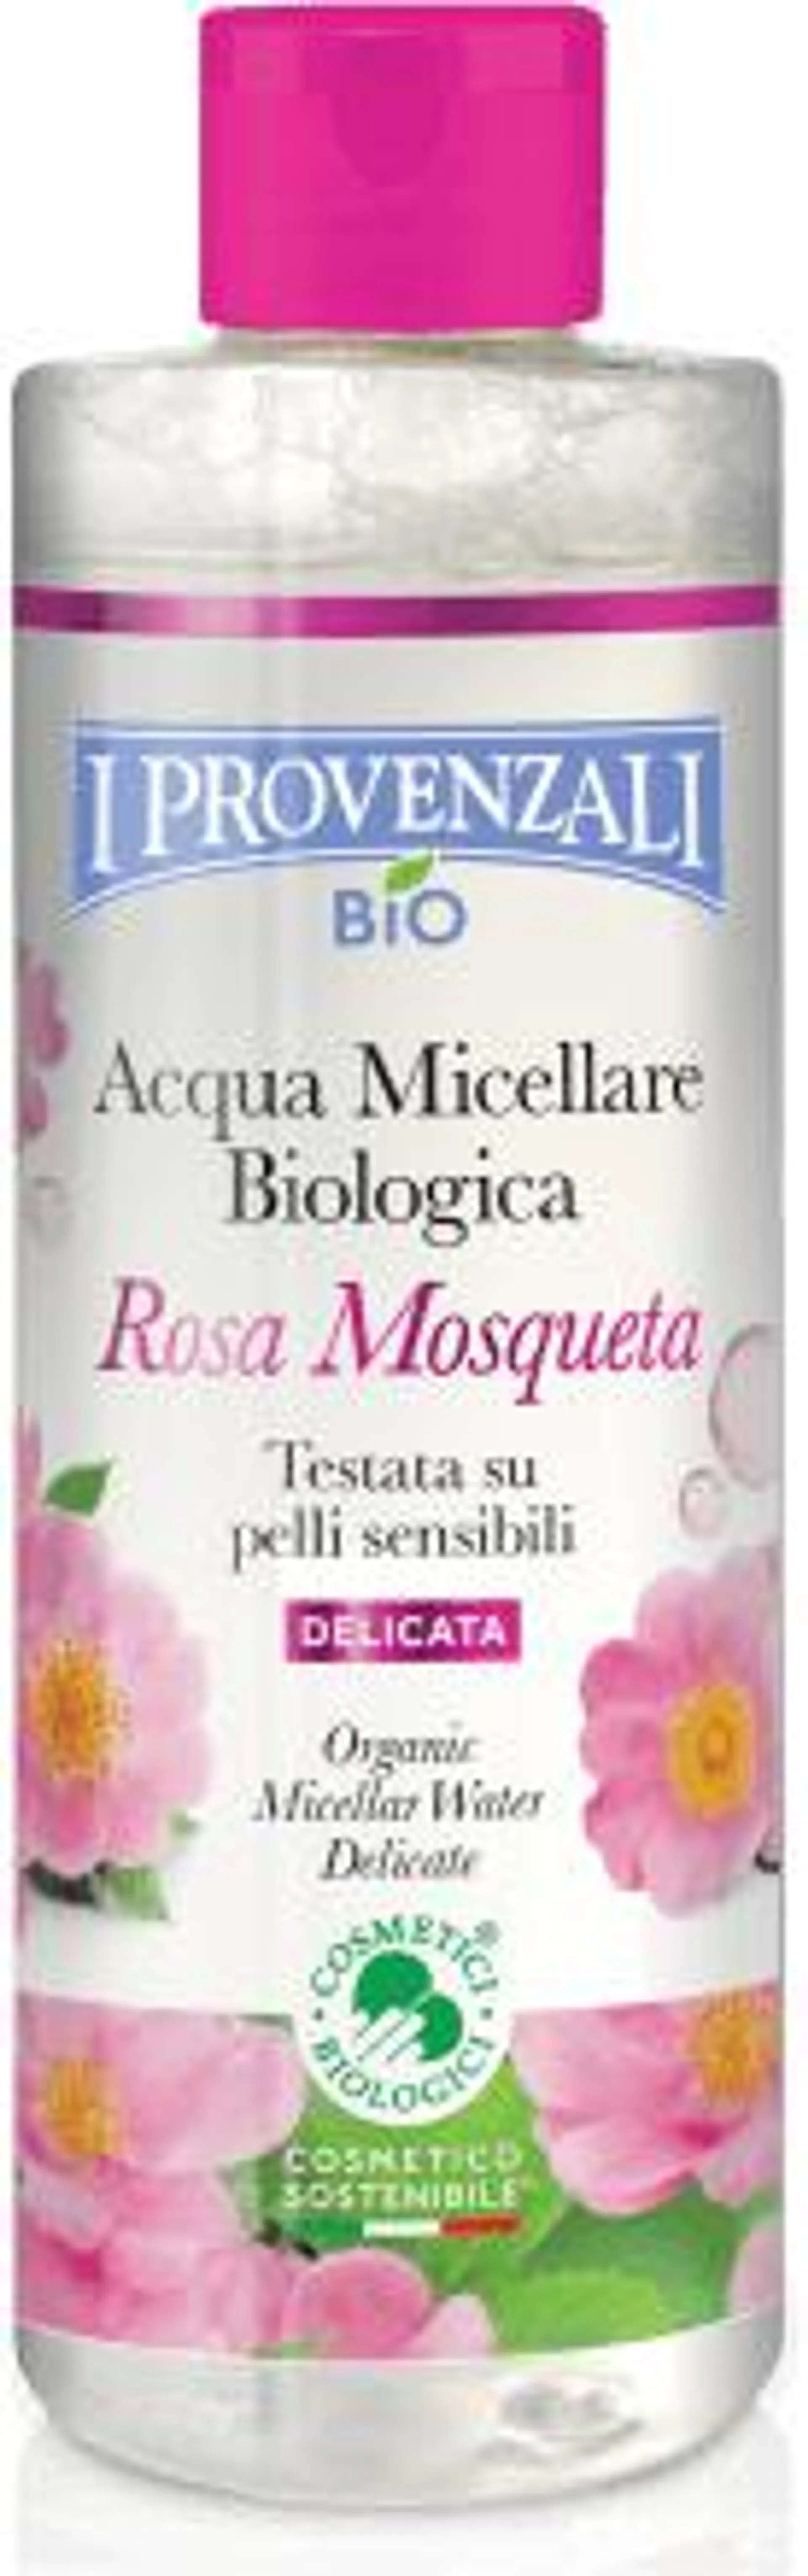 Acqua micellare biologica Rosa Mosqueta, 400 ml